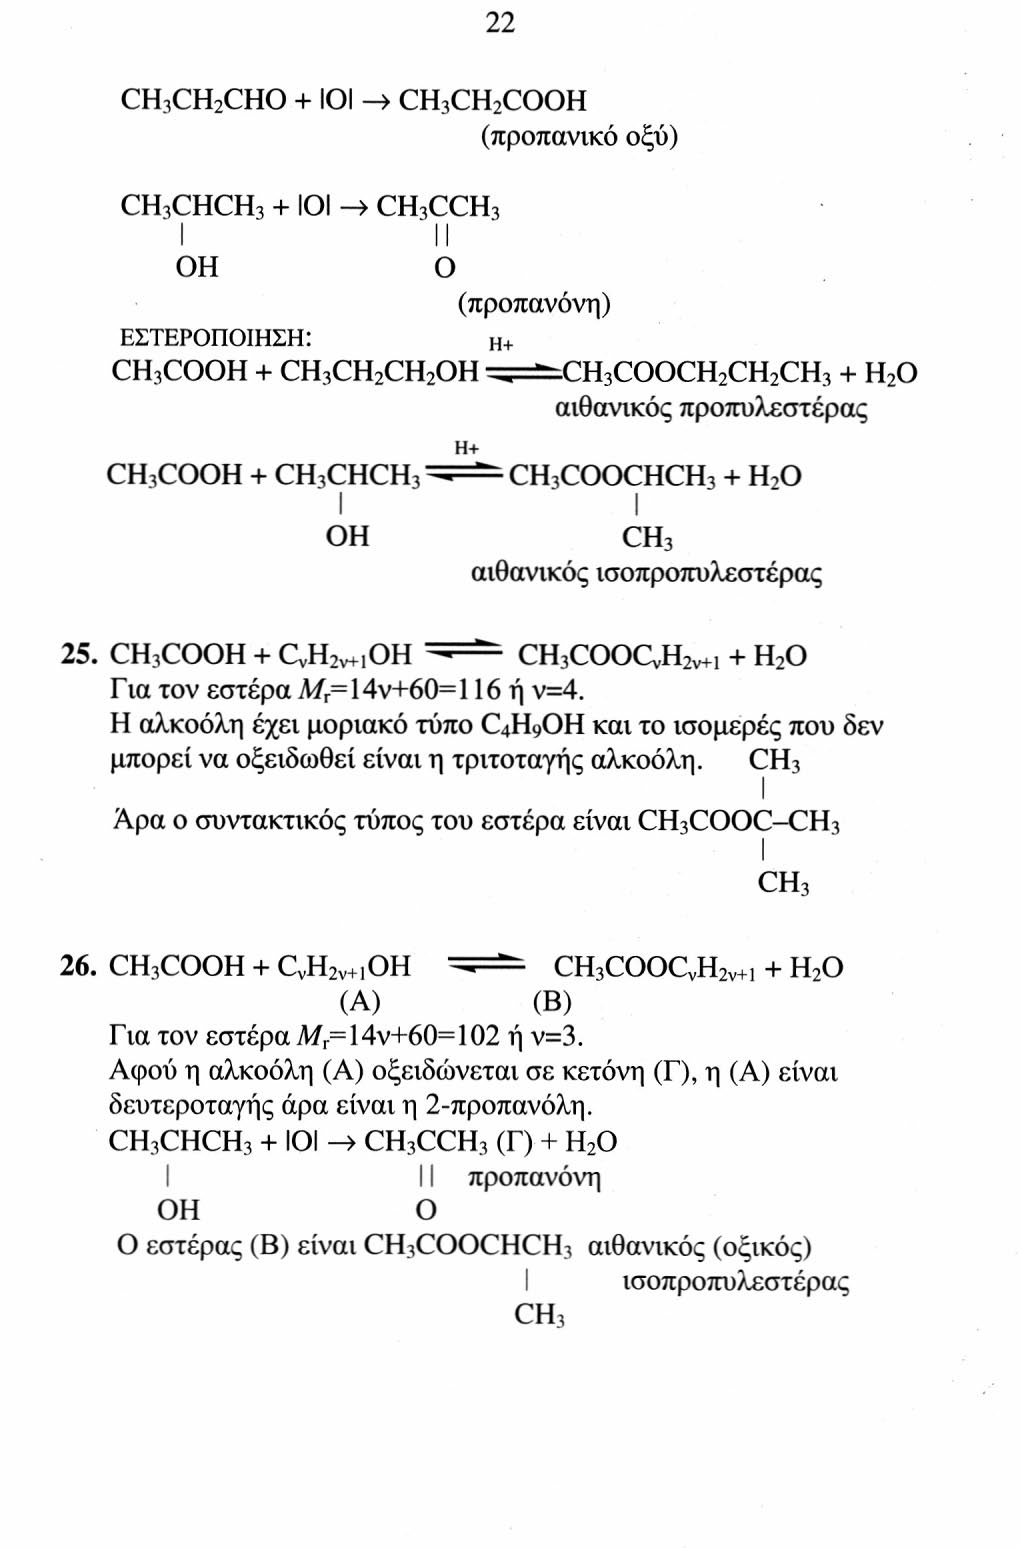 22 CH 3 CH 2 CHO + ΙΟΙ -> CH 3 CH 2 CO (προπανικό οξύ) CH 3 CHCH 3 + ΙΟΙ -» CH 3 CCH 3 l O (προπανόνη) ΕςΤΕΡΟΠΟΙΗςΗ: Η+ CH 3 CO + CH 3 CH 2 CH 2 ^=^CH 3 COOCH 2 CH 2 CH 3 + H 2 O ανθανικός